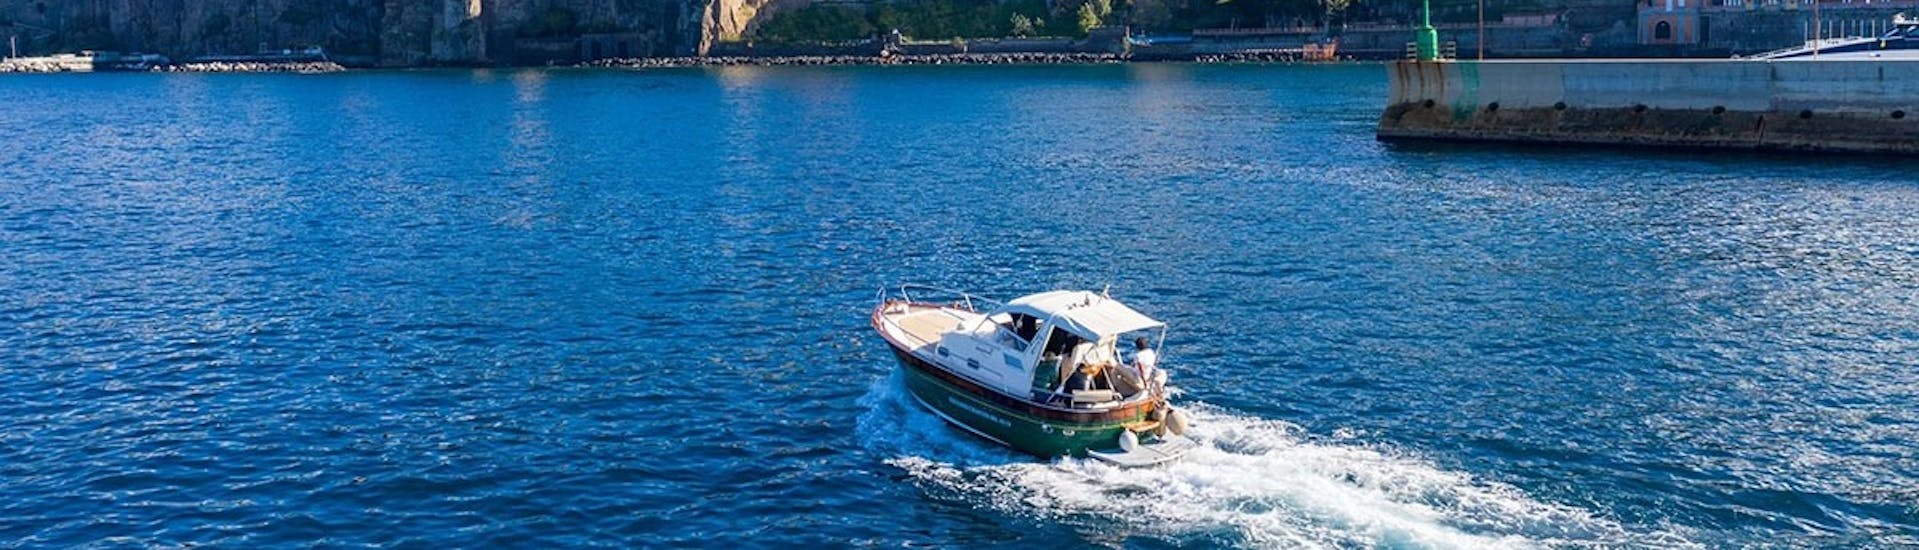 Giuliani Charter Sorrento Boot im offenen Wasser während der Bootstour an der sorrentinischen Küste mit Limoncello-Verkostung